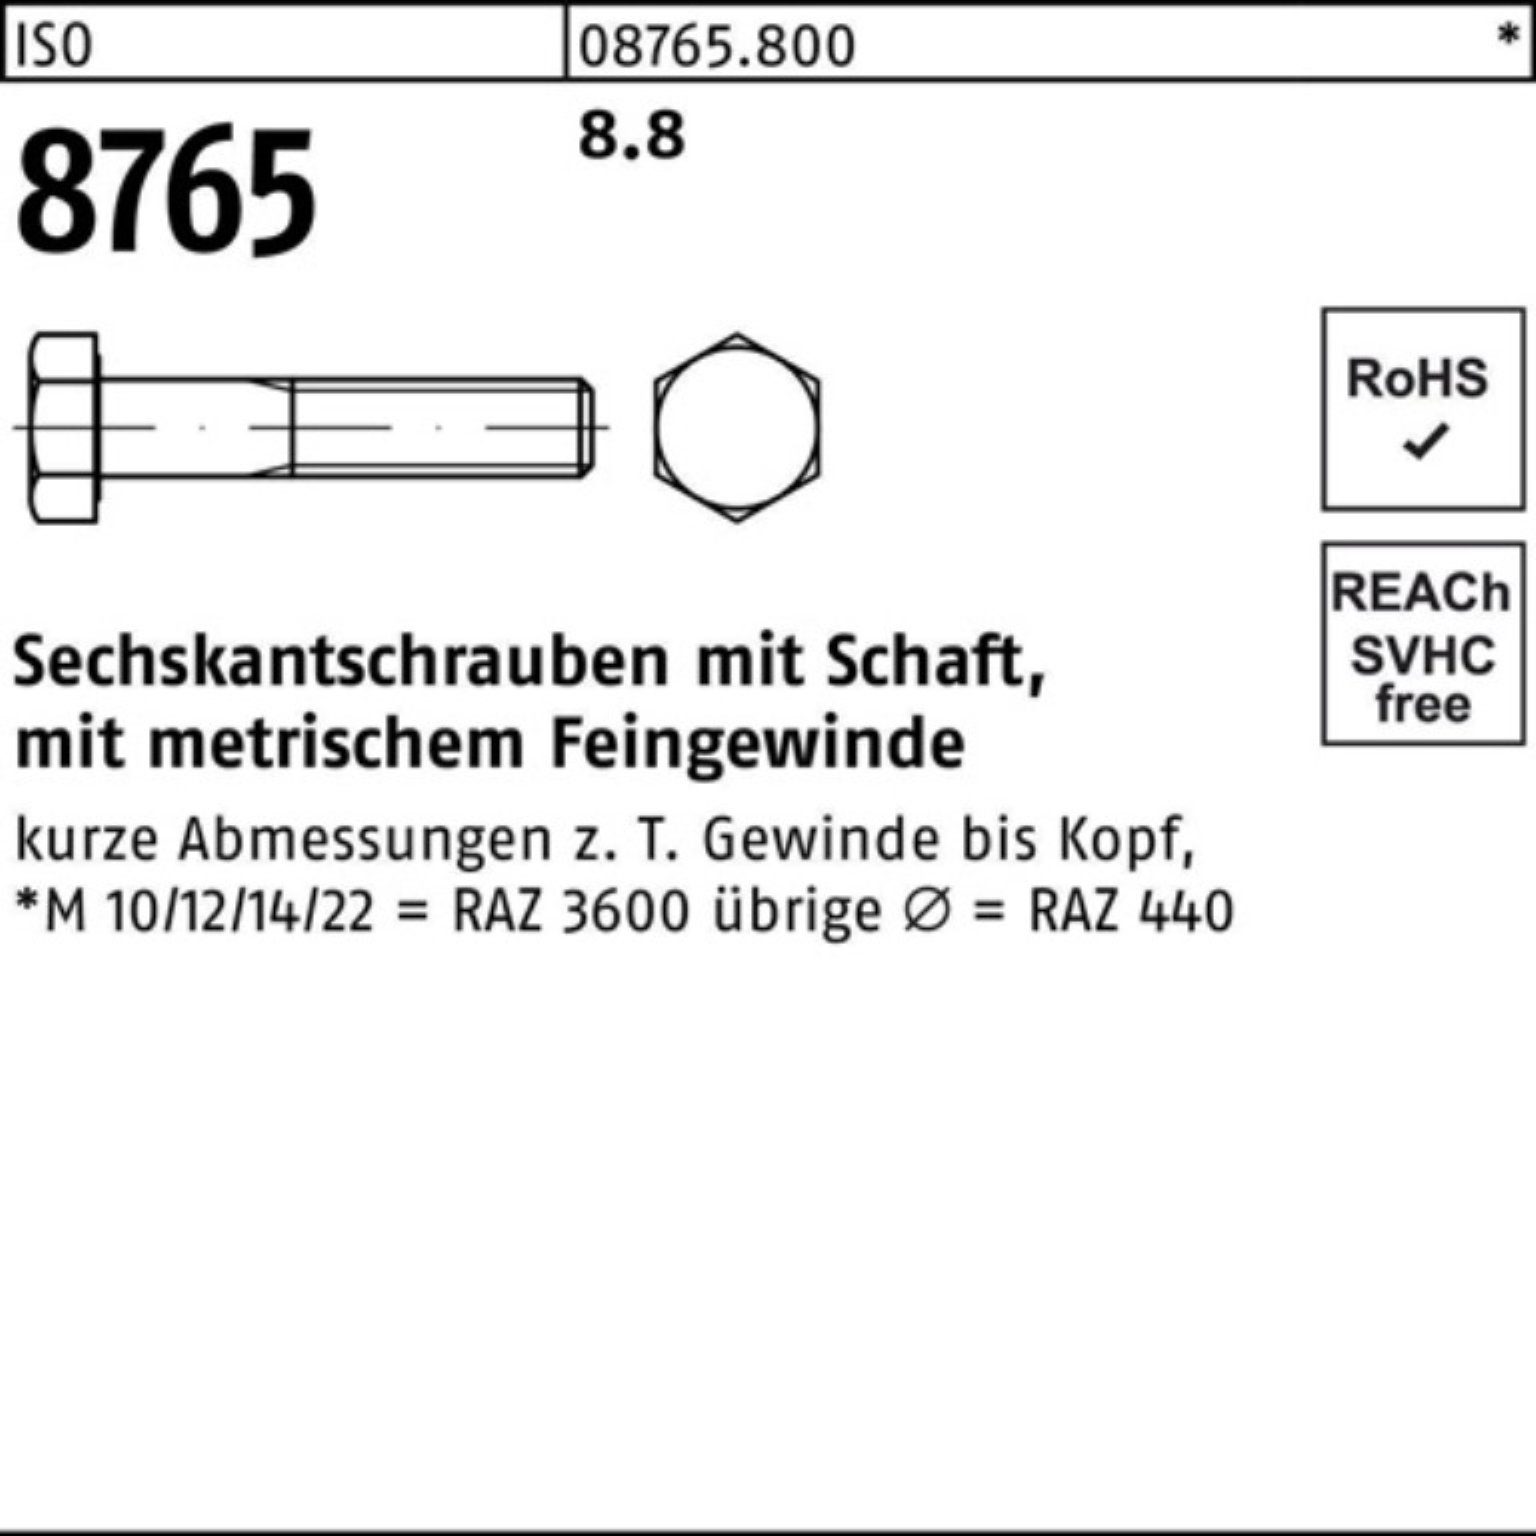 Schaft Stüc 8.8 M12x1,5x 50 Sechskantschraube Reyher 100 Sechskantschraube Pack 8765 ISO 100er